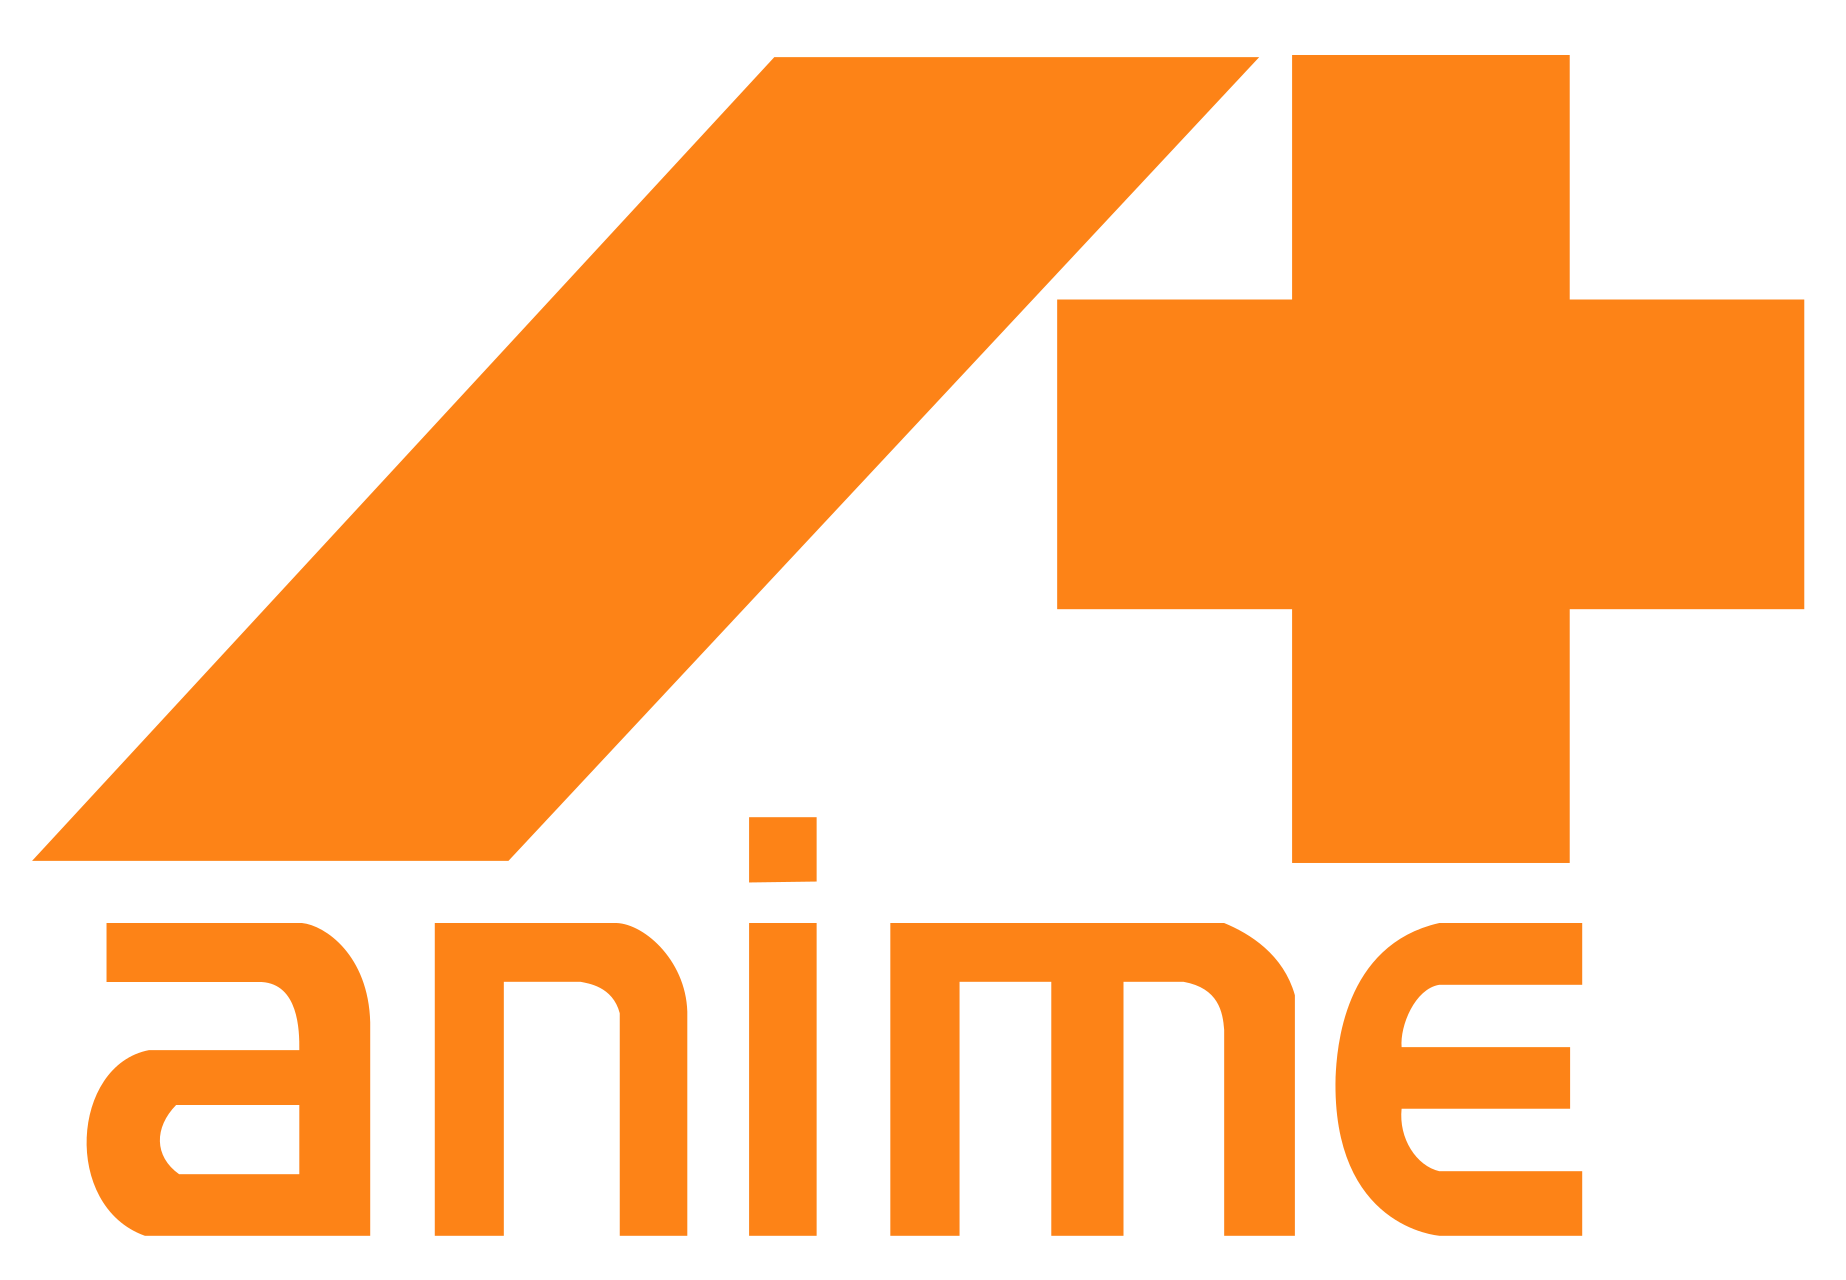 anime #fandub